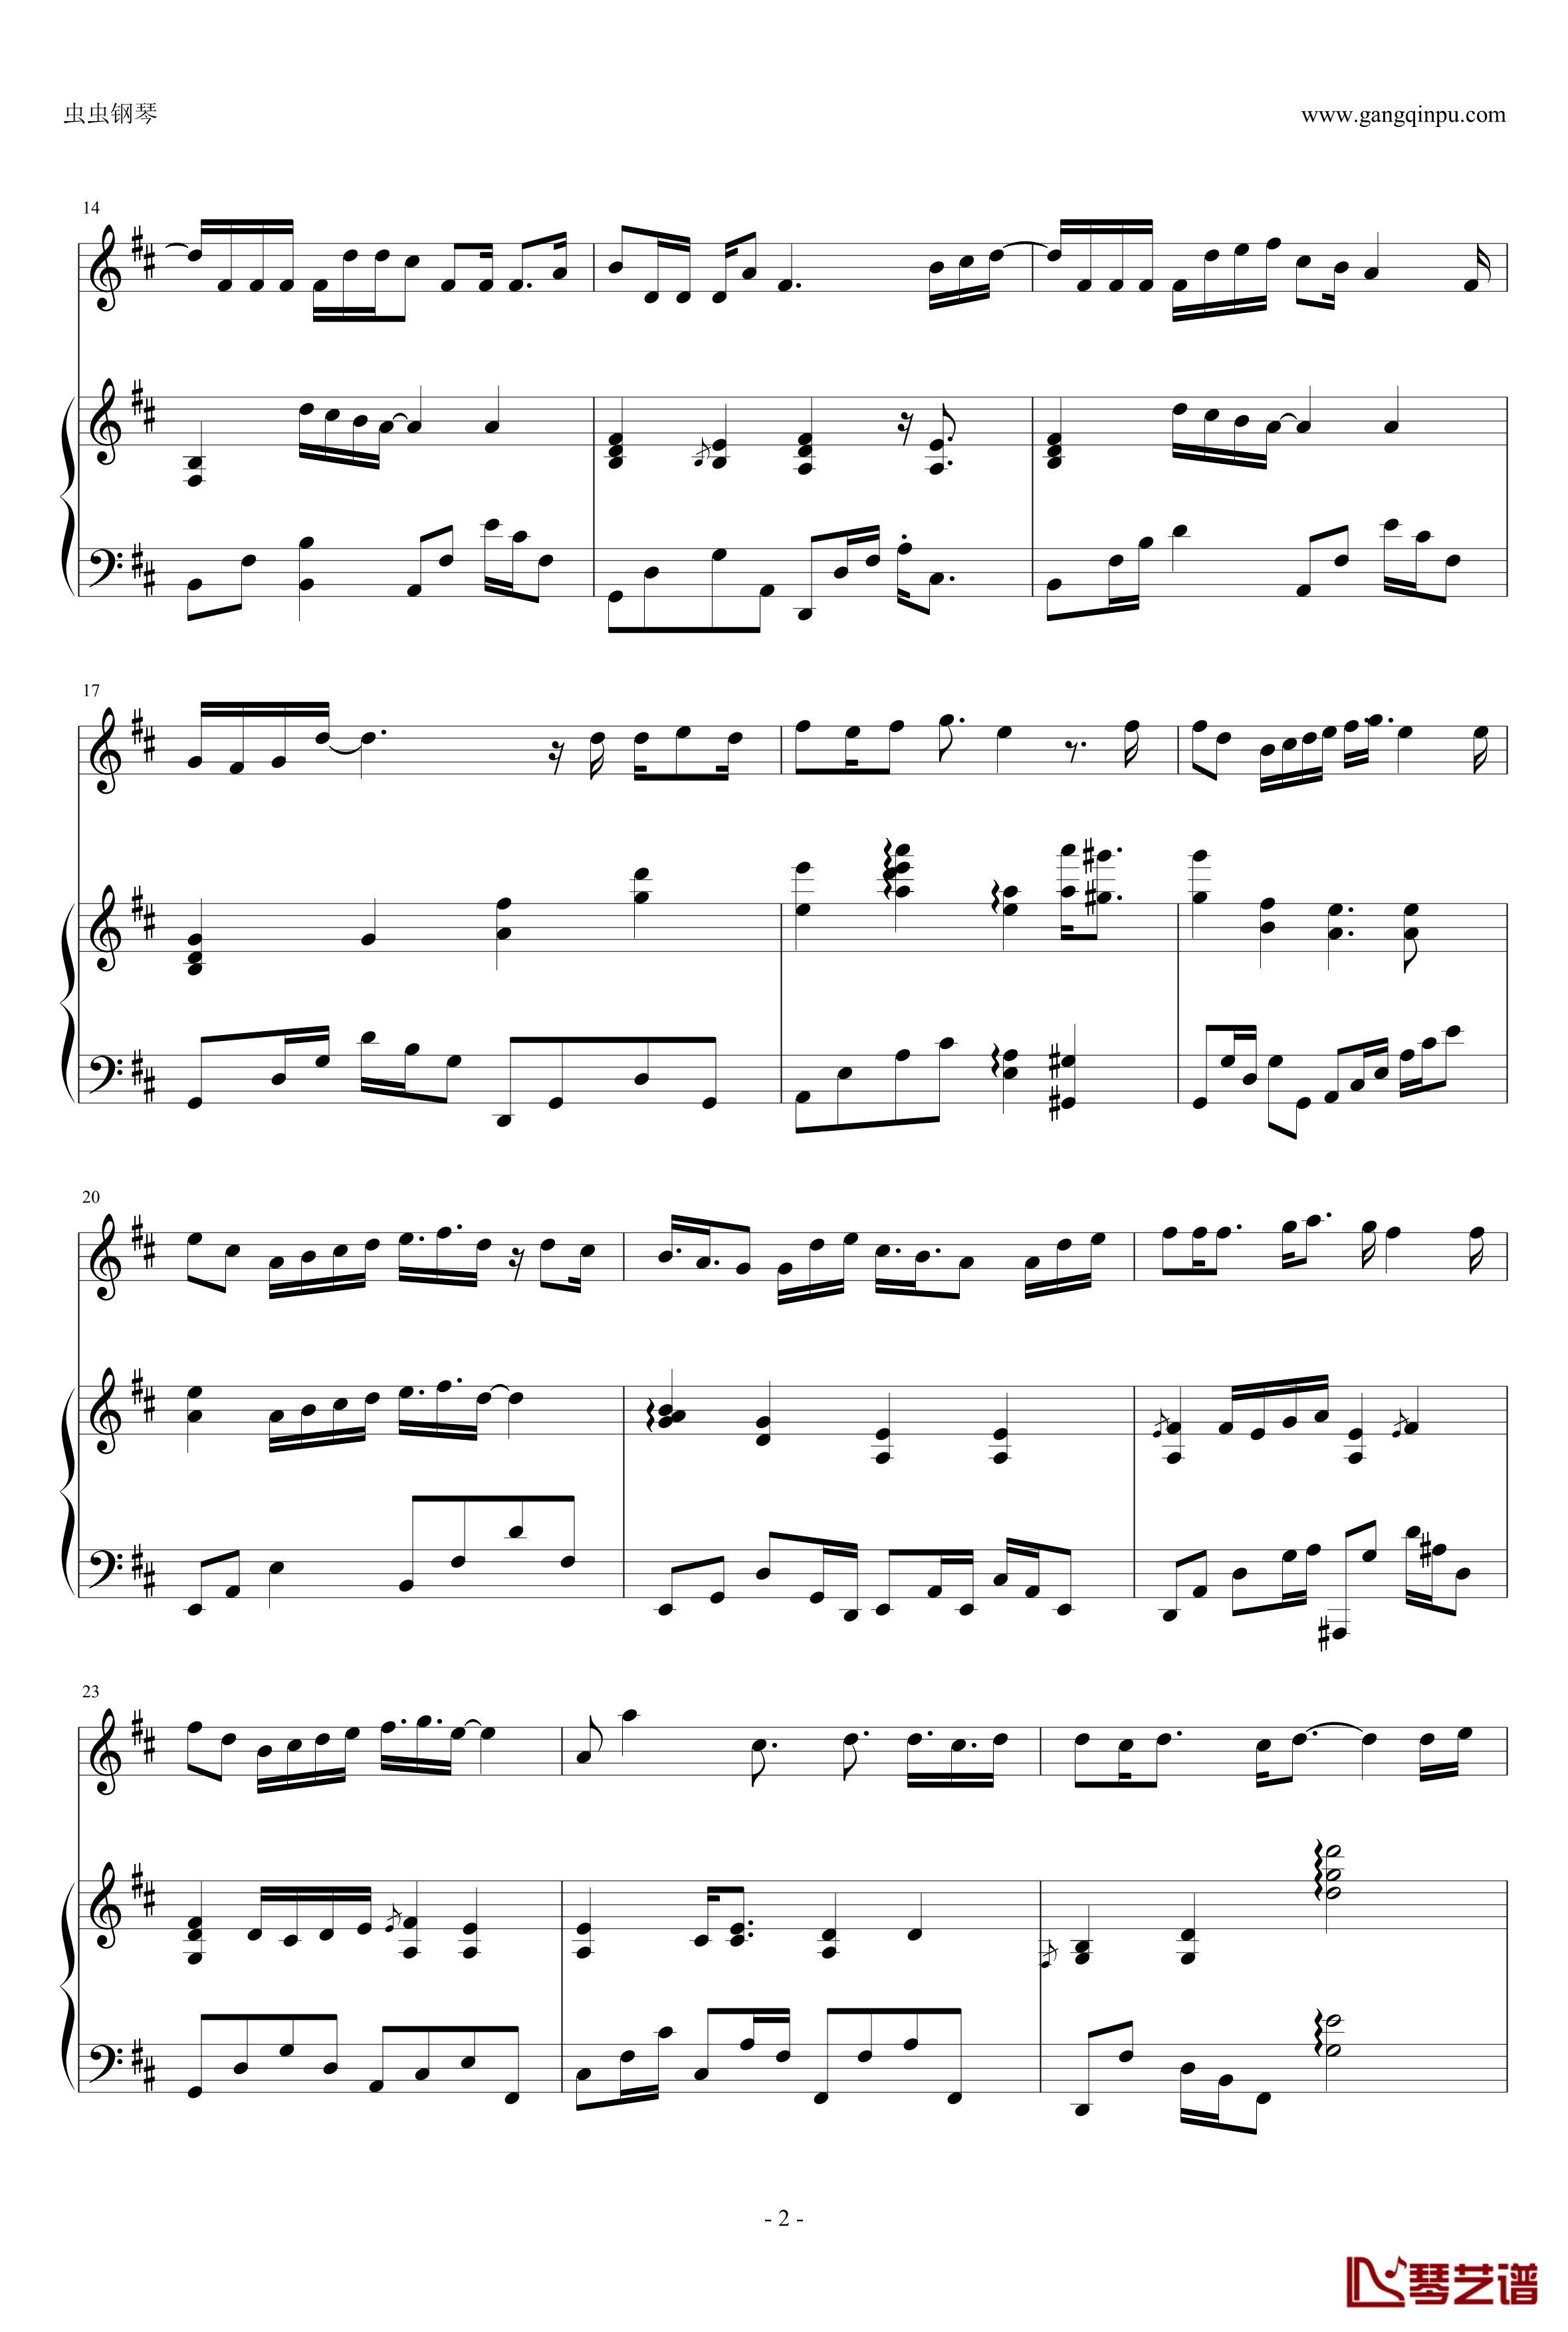 天梯钢琴谱-弹唱版-C-allstar2